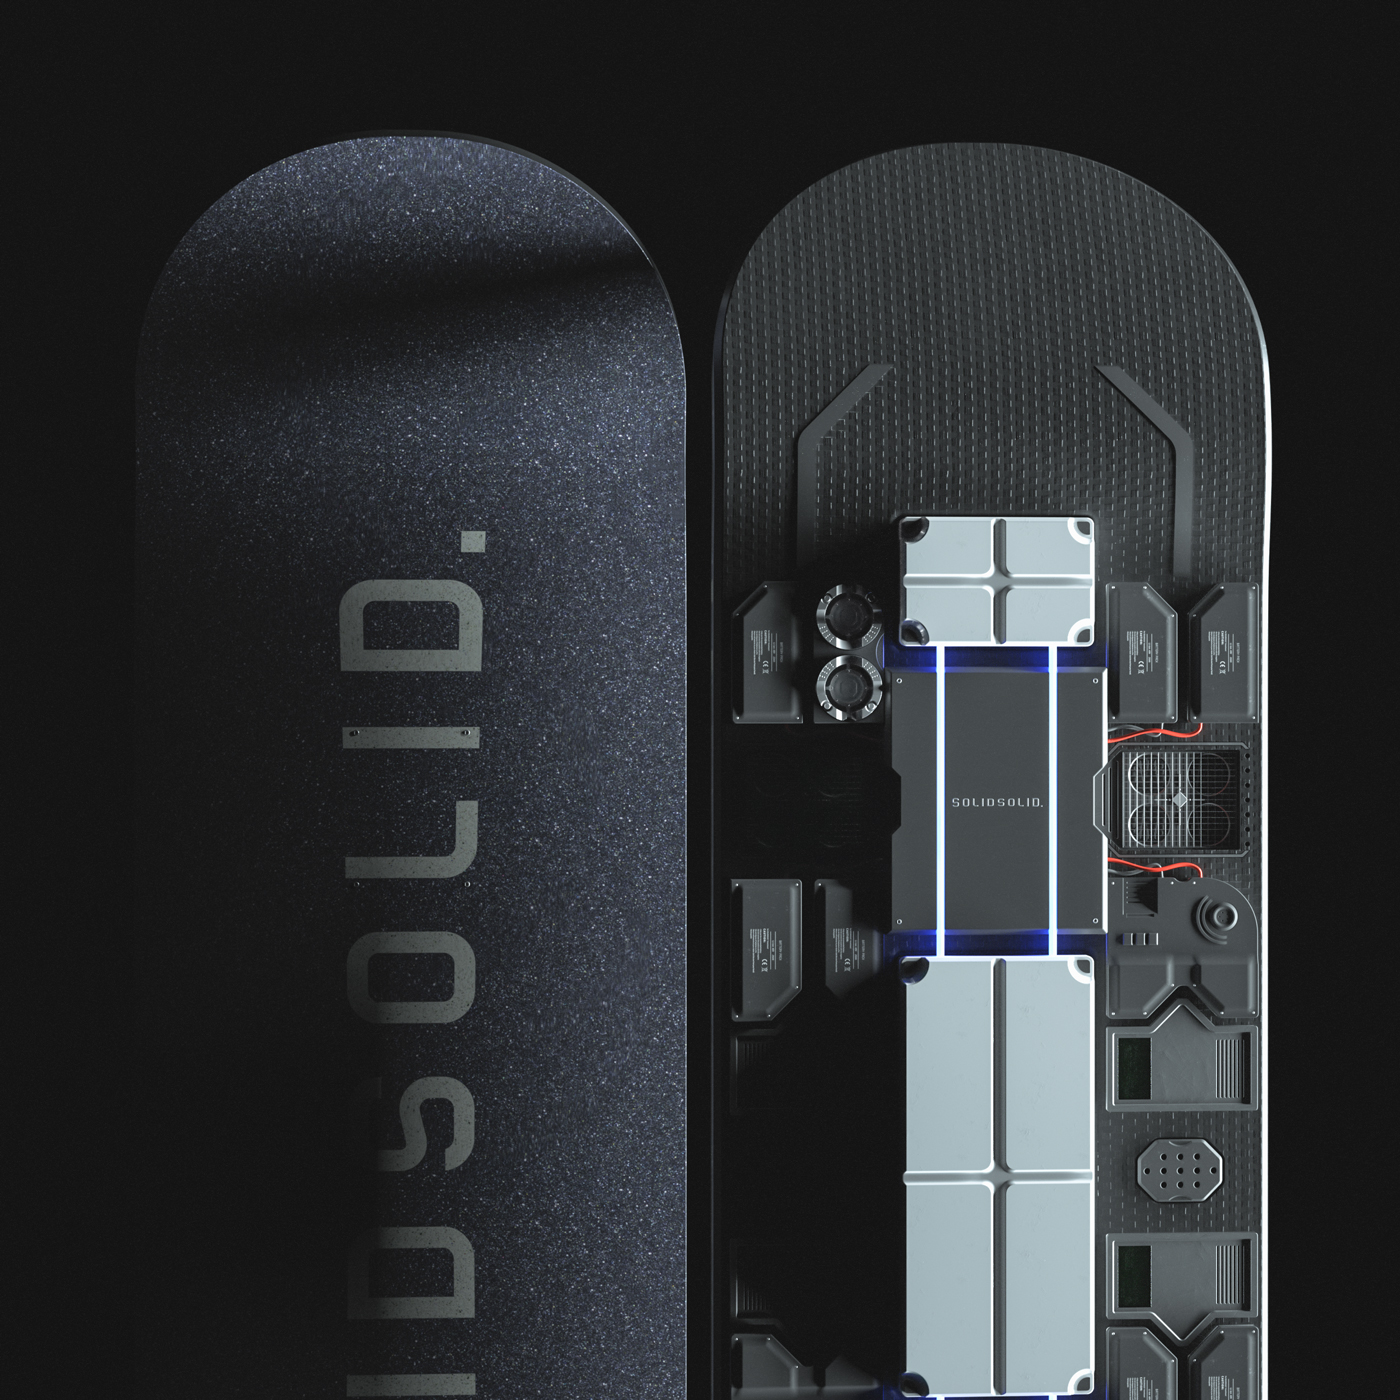 hoverboard skate tech Render Sci Fi futuristic Vehicle